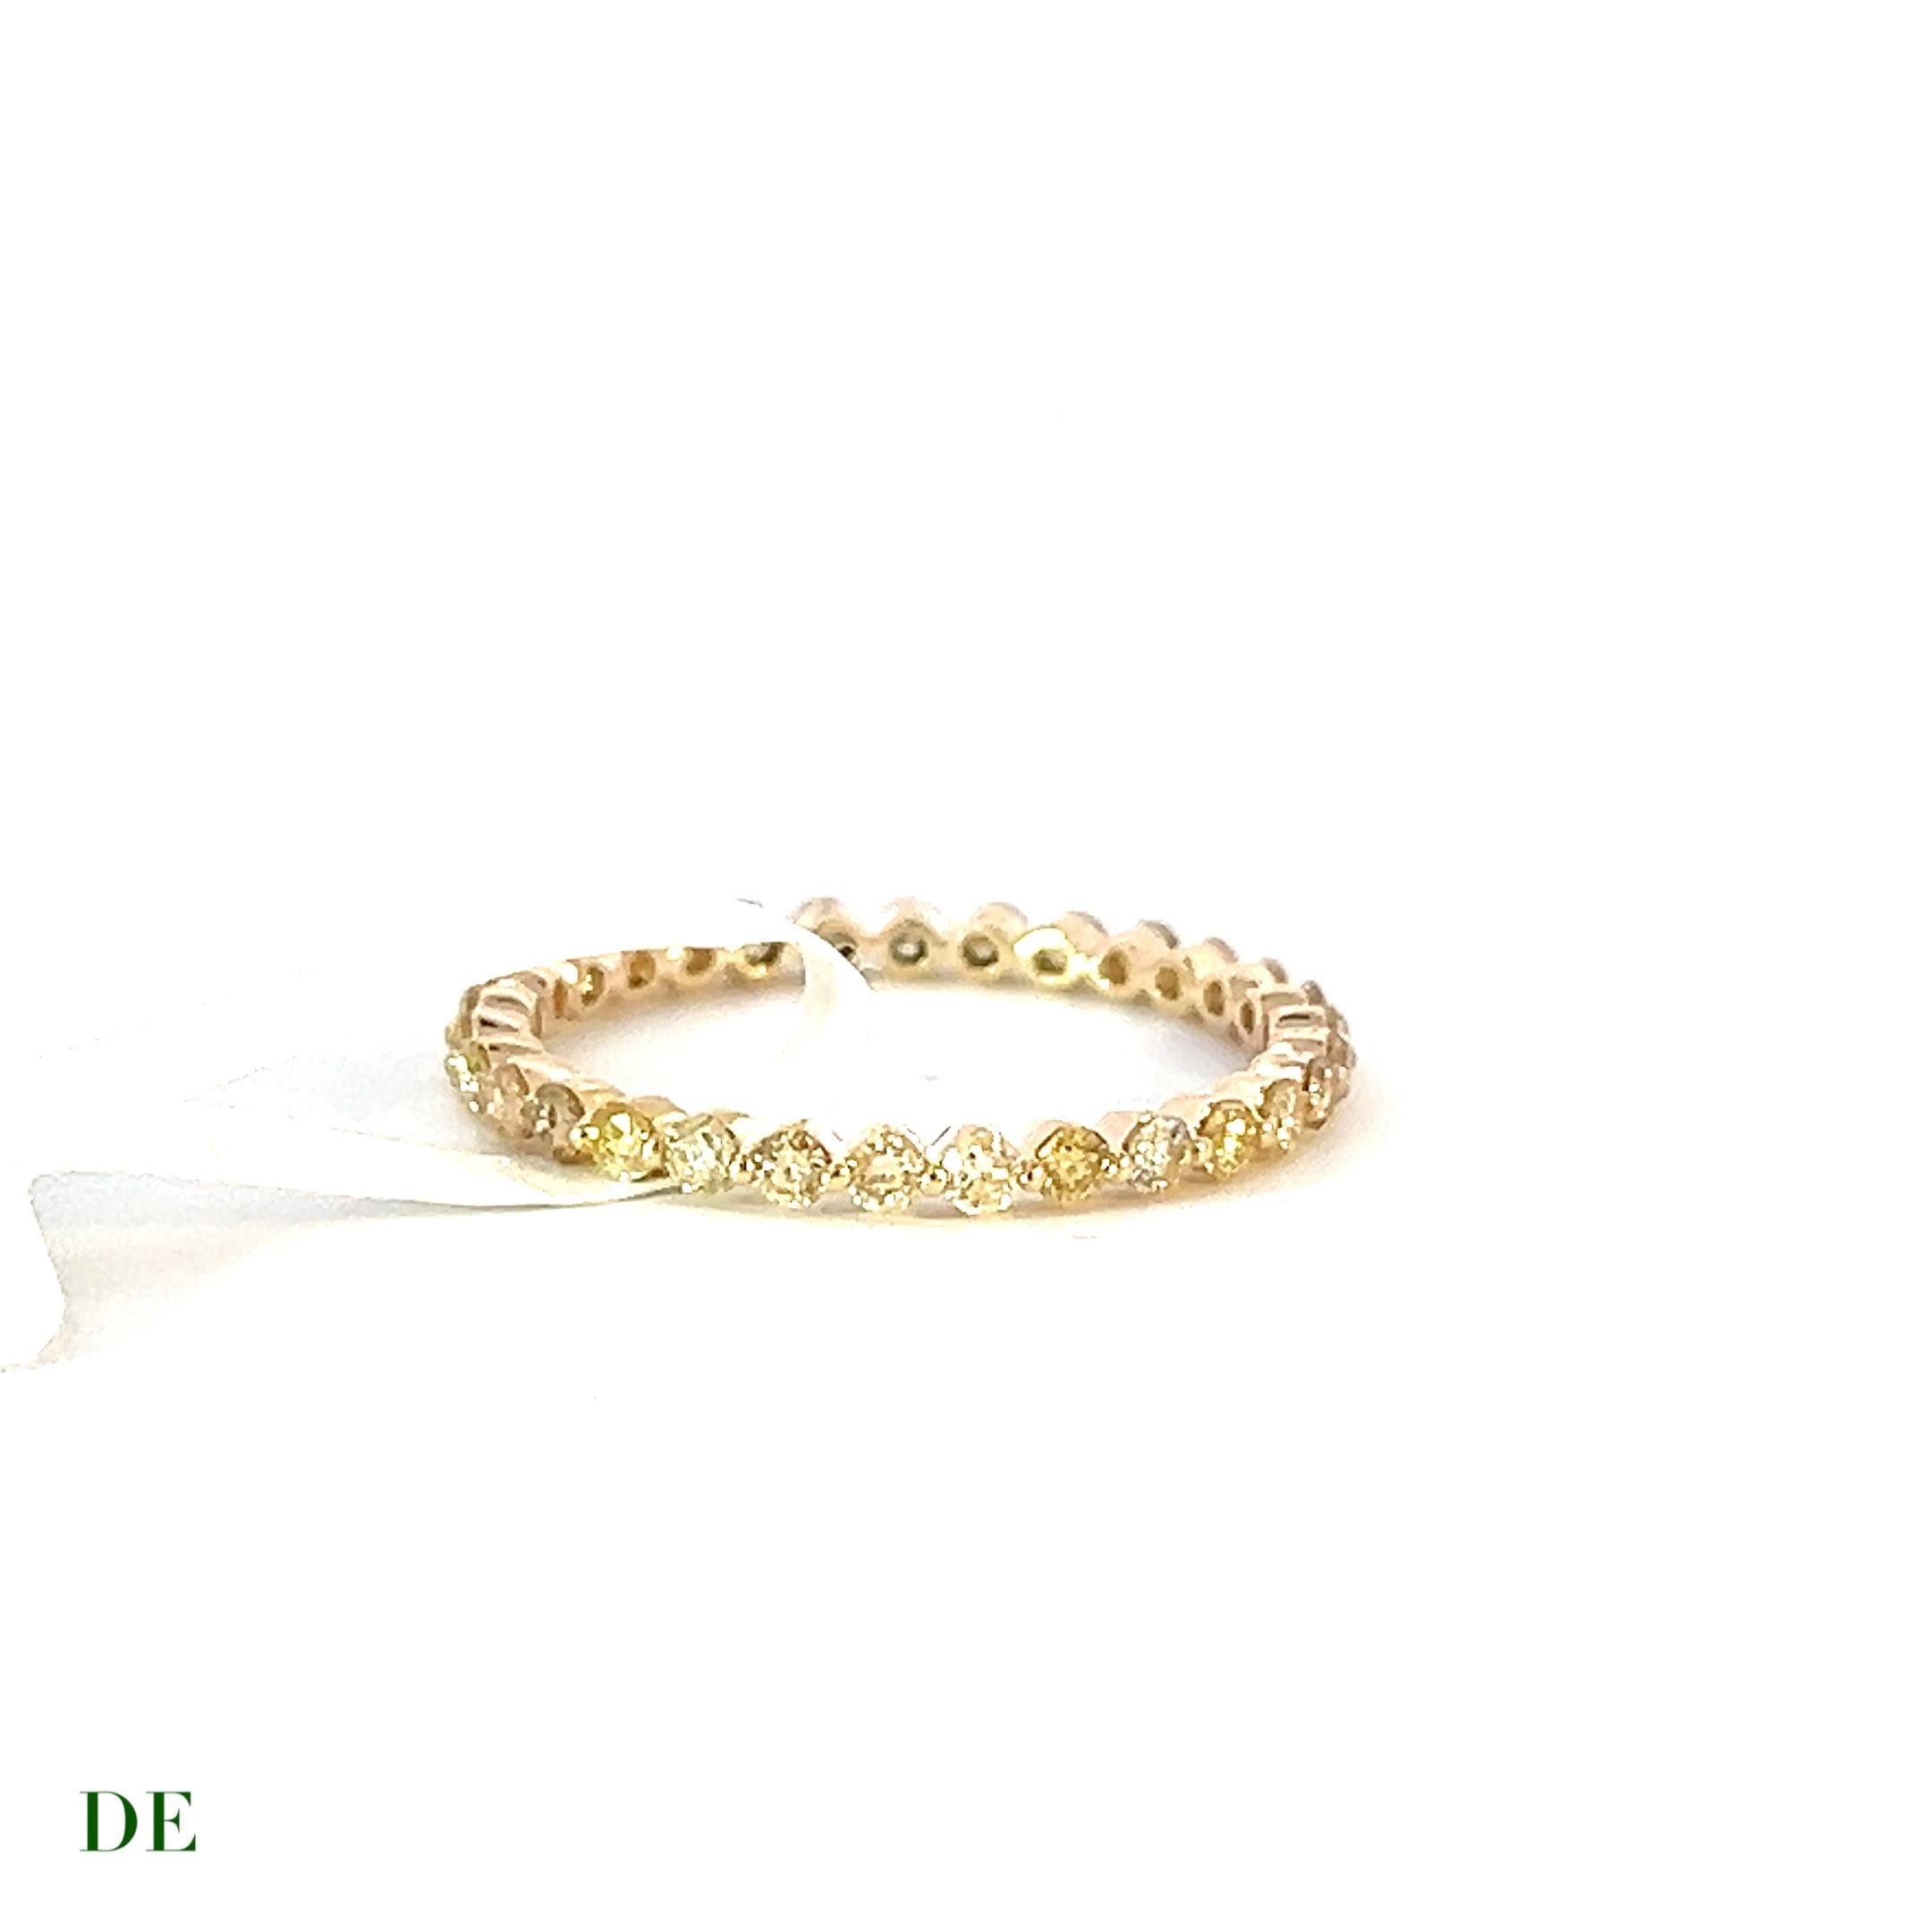 Classic 14k Gelbgold .69 Karat Runde Goldene Diamant Eternity Band Ring

Der klassische 14-karätige Gelbgoldring mit rundem, goldenem Diamanten ist ein zeitloses Schmuckstück, das Eleganz und Raffinesse verkörpert. Dieser exquisite Ring zeichnet